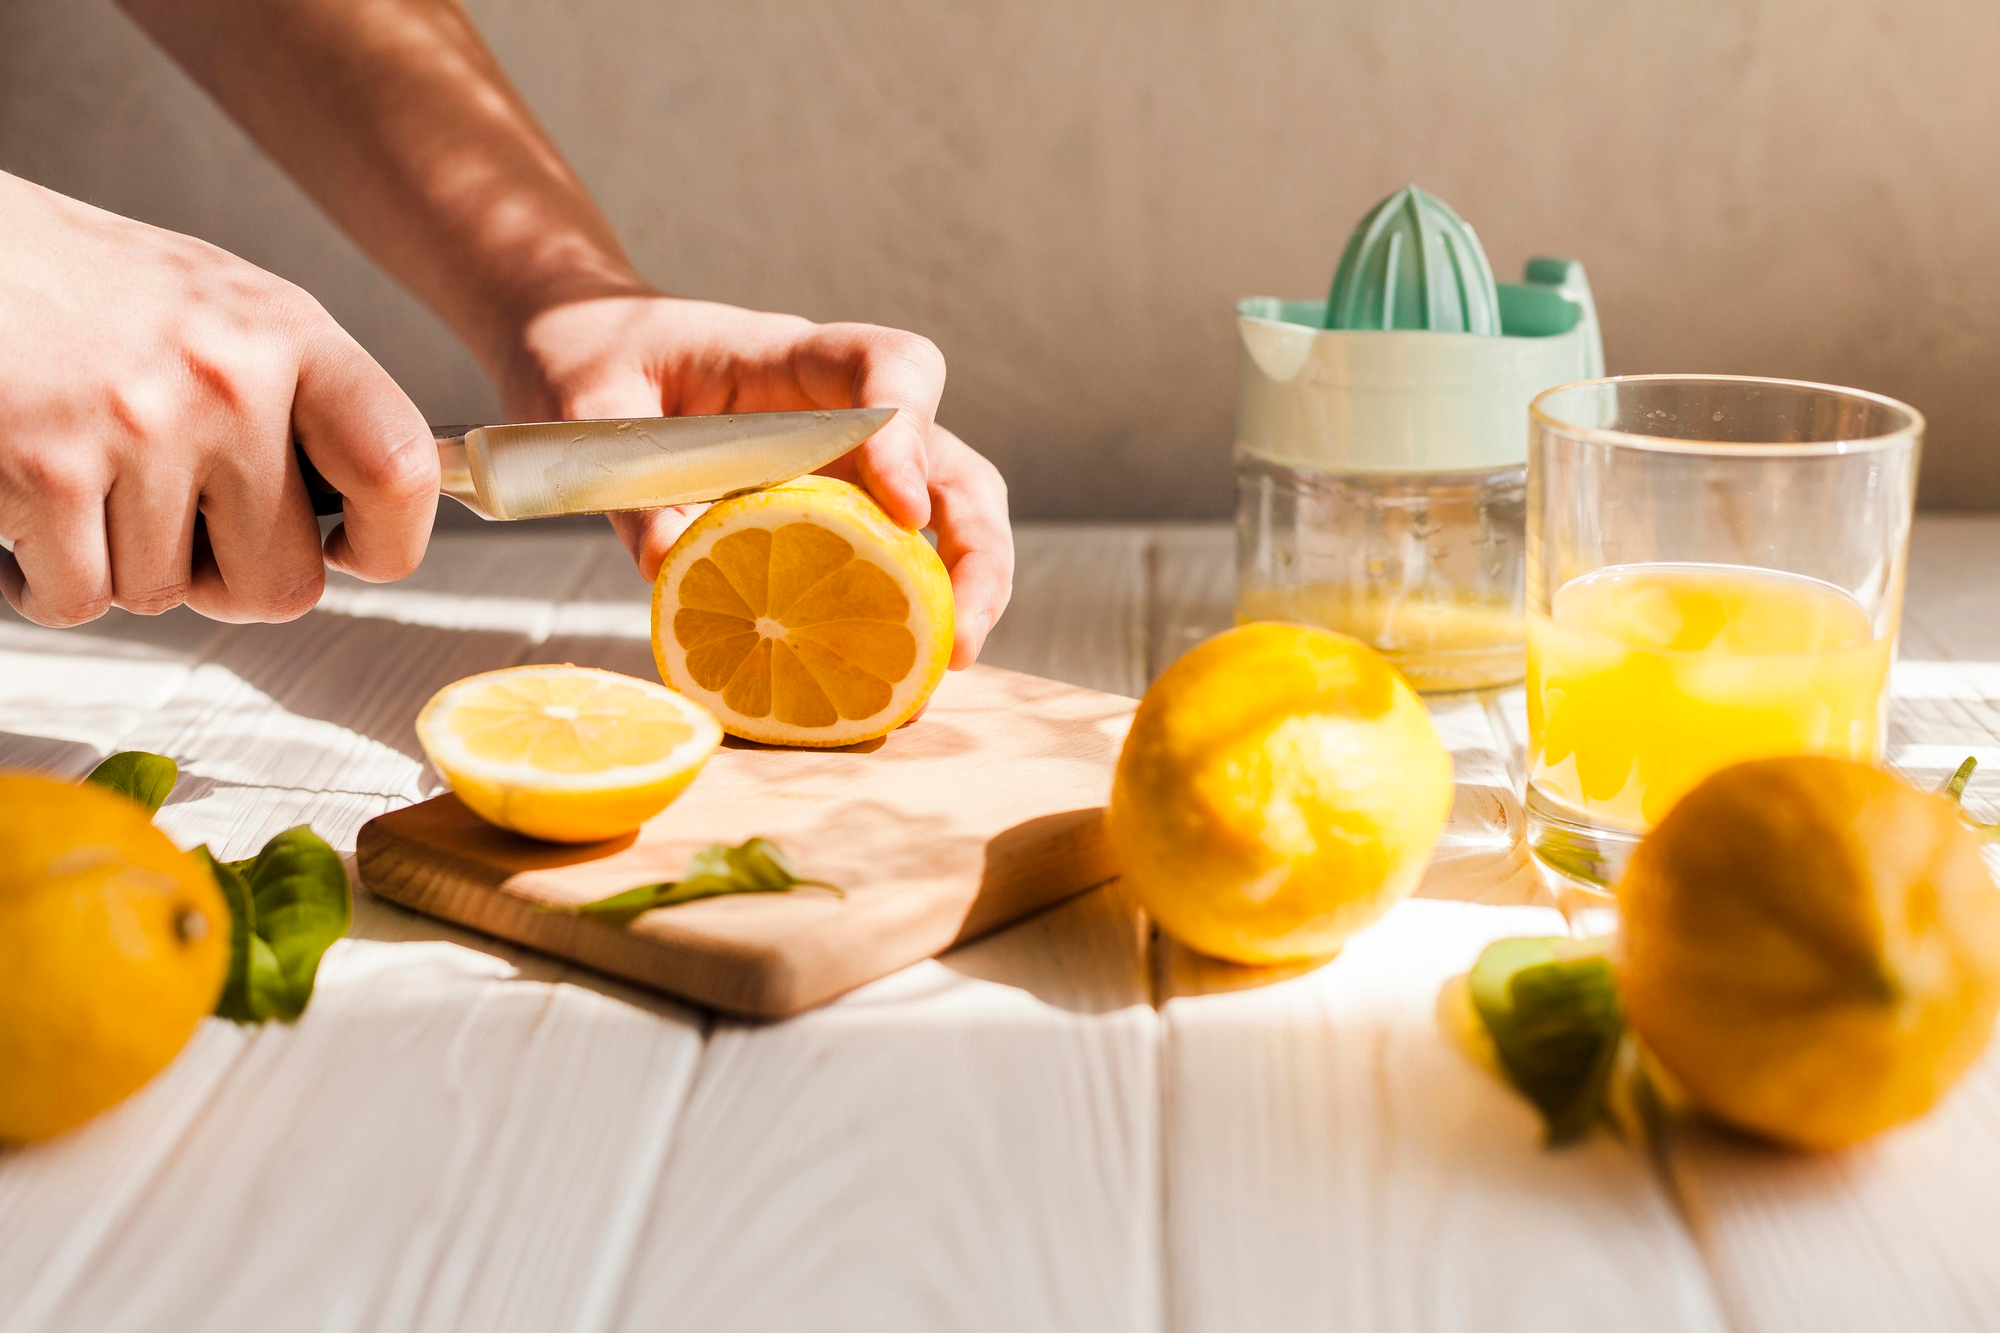 How To Make Orange Juice In A Blender | Storables